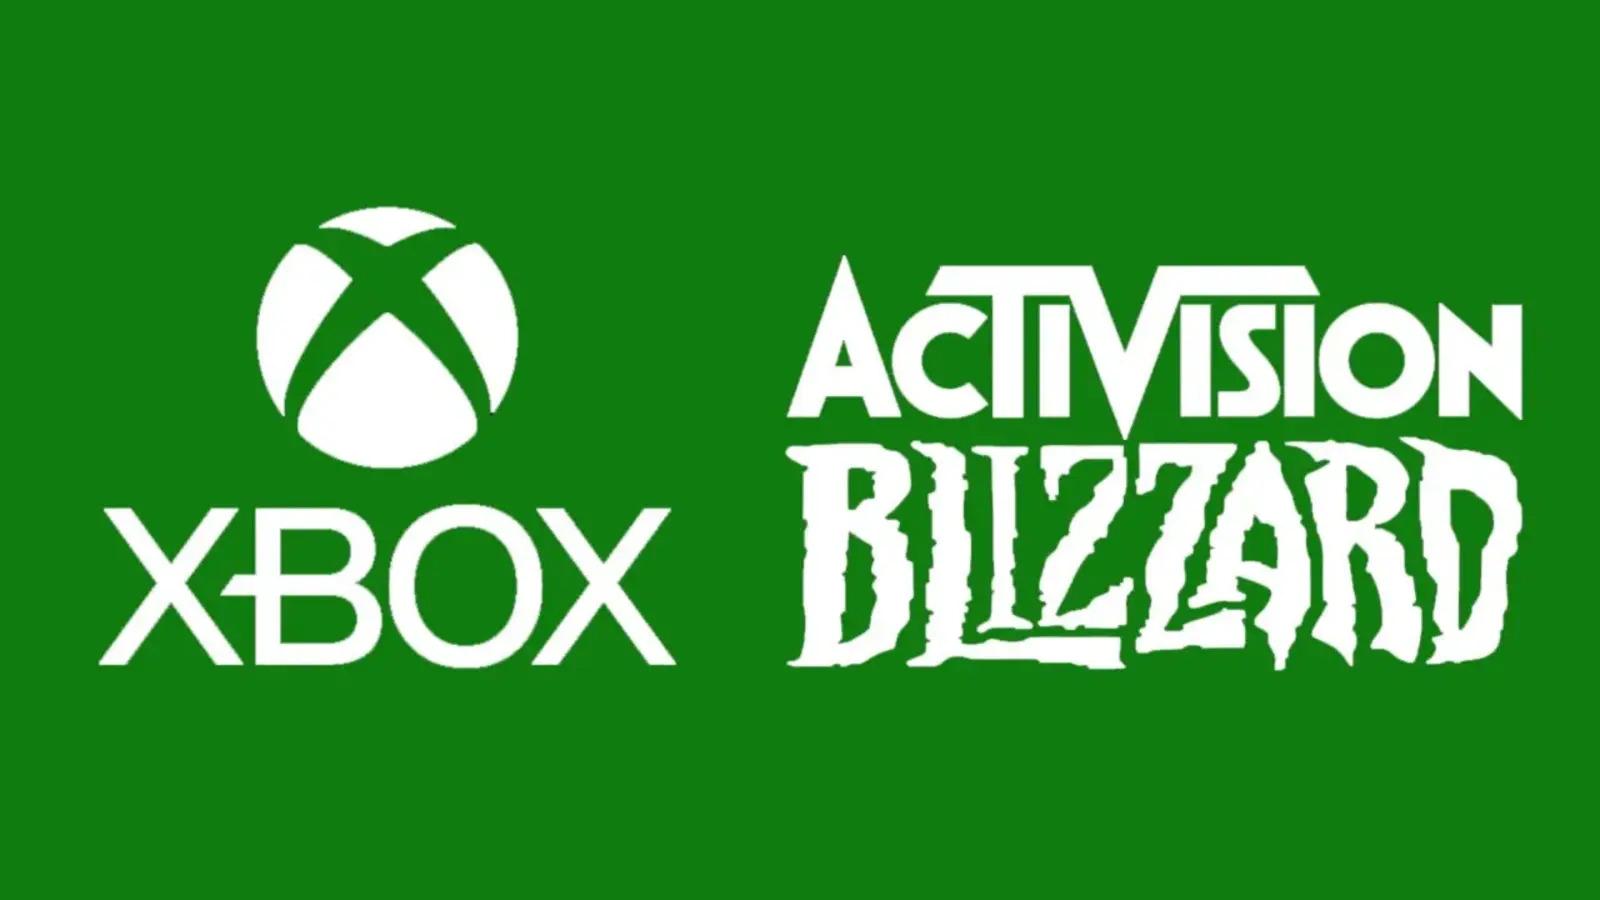 Xbox'un Activision Blizzard'ı satın alması konusunda olumlu gelişmeler yaşandı